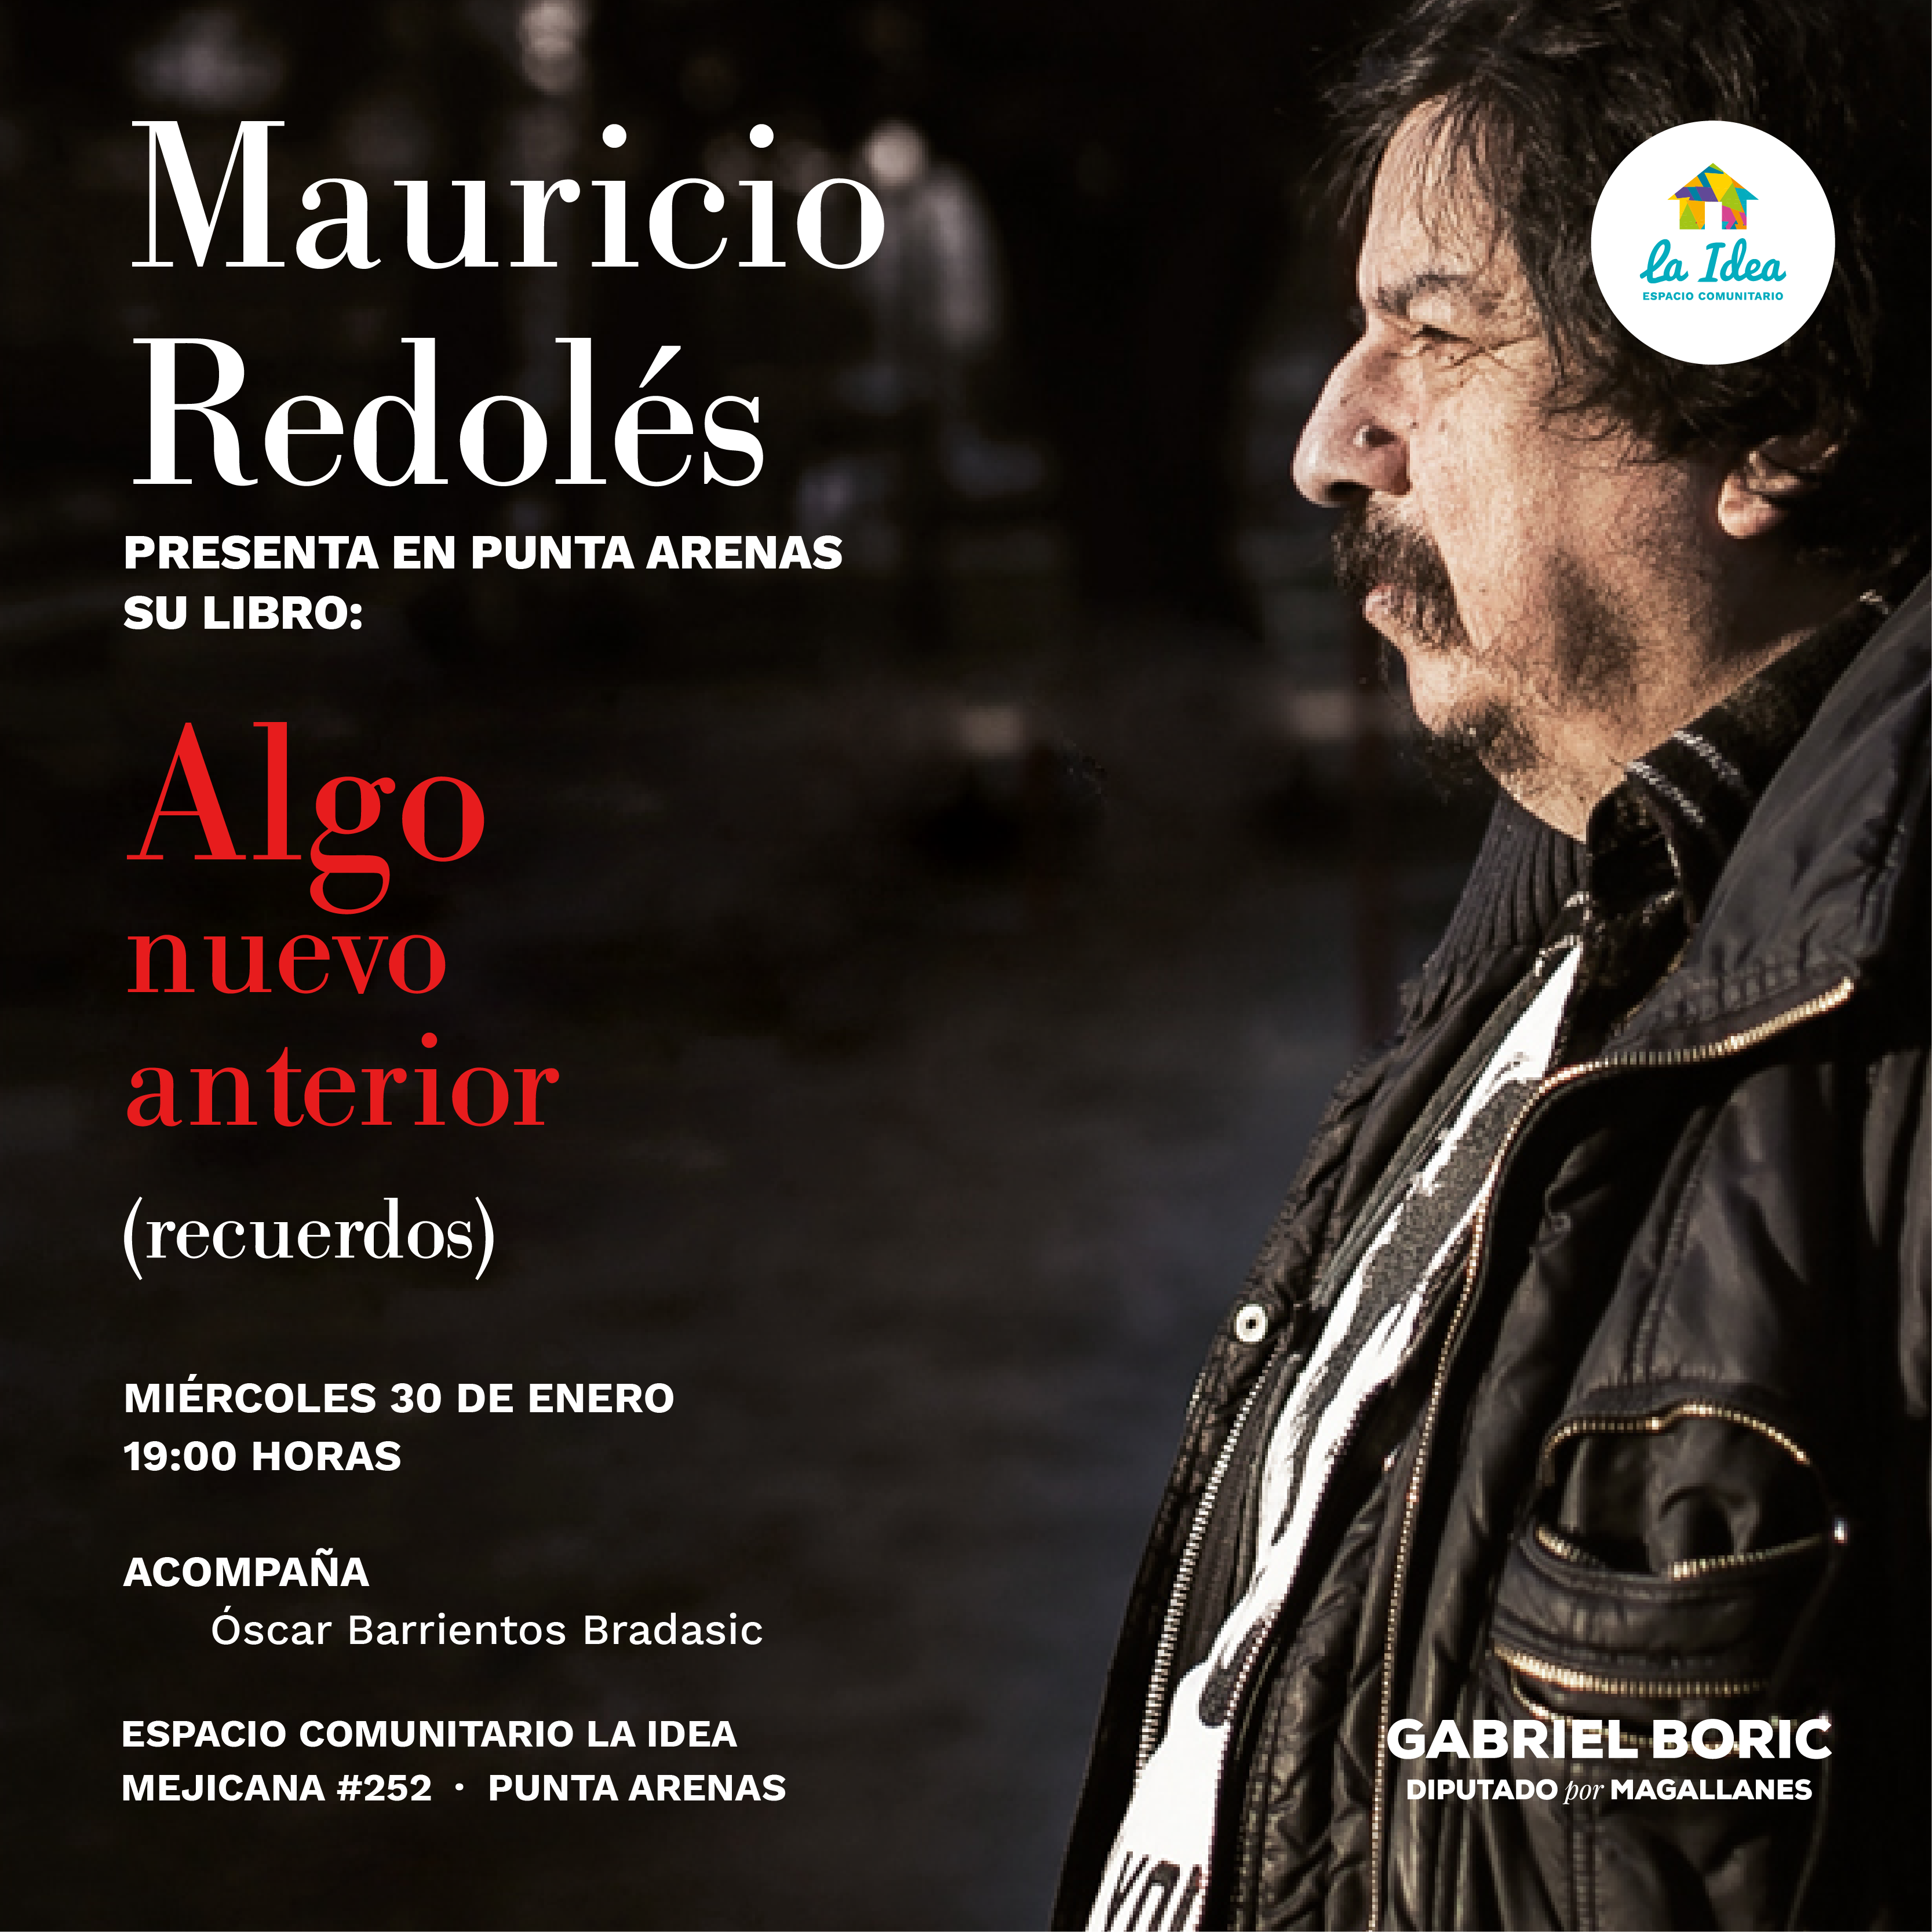 El escritor Mauricio Redolés presentará su último libro “Algo nuevo anterior” en el Espacio Comunitario La Idea en Punta Arenas